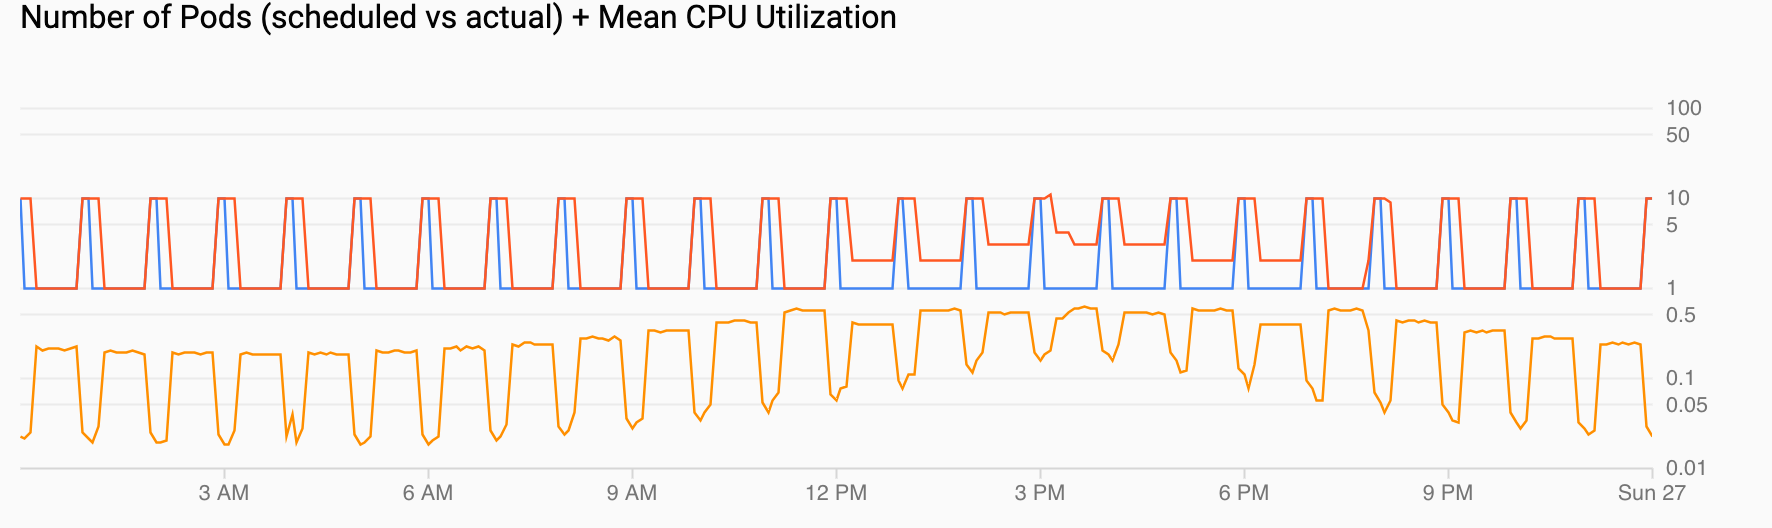 2 gráficos. Uno muestra la demanda de Pods con un aumento repentino en la demanda por hora. El otro muestra que el uso de CPU aumenta y disminuye, pero se completa con el valor alto configurado.